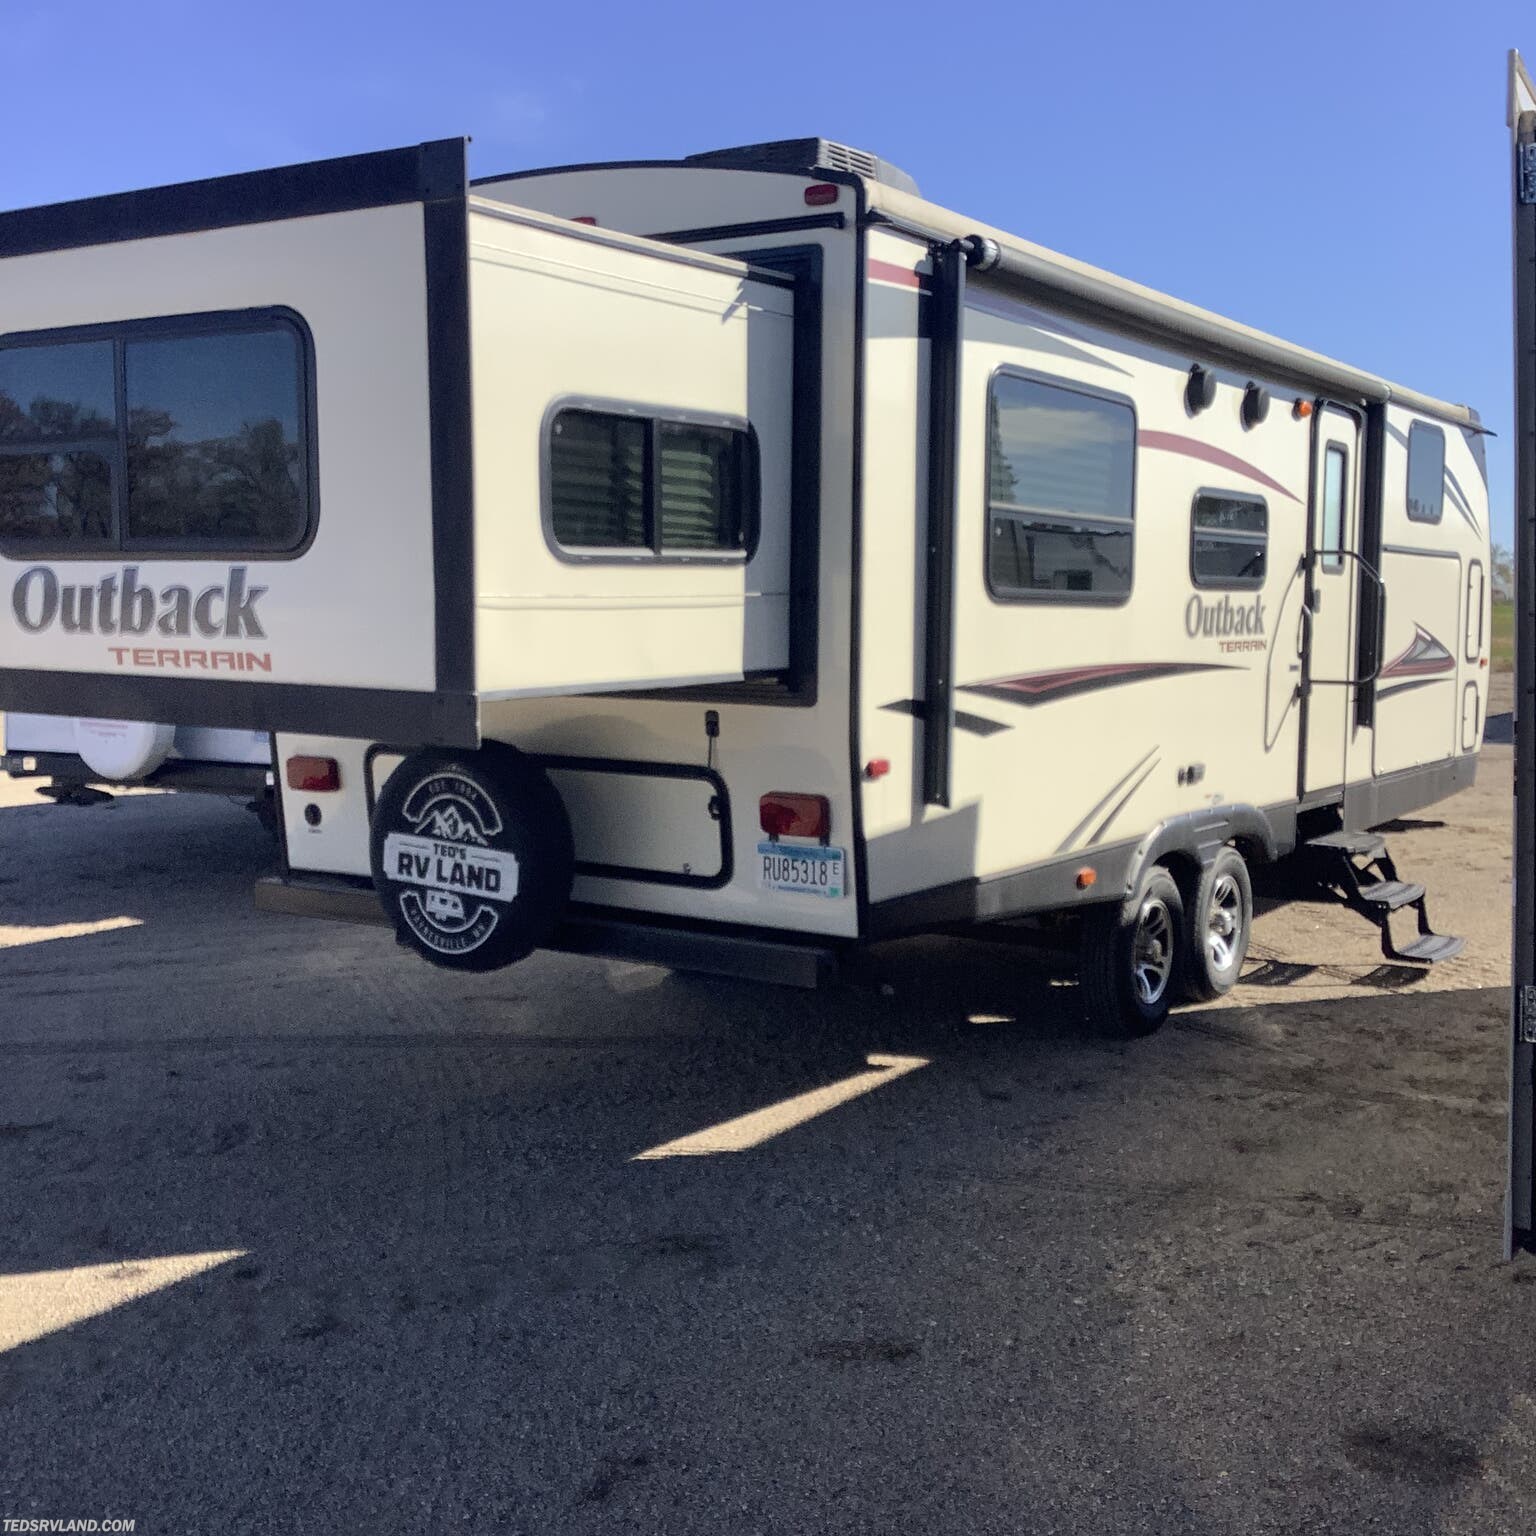 outback terrain travel trailer